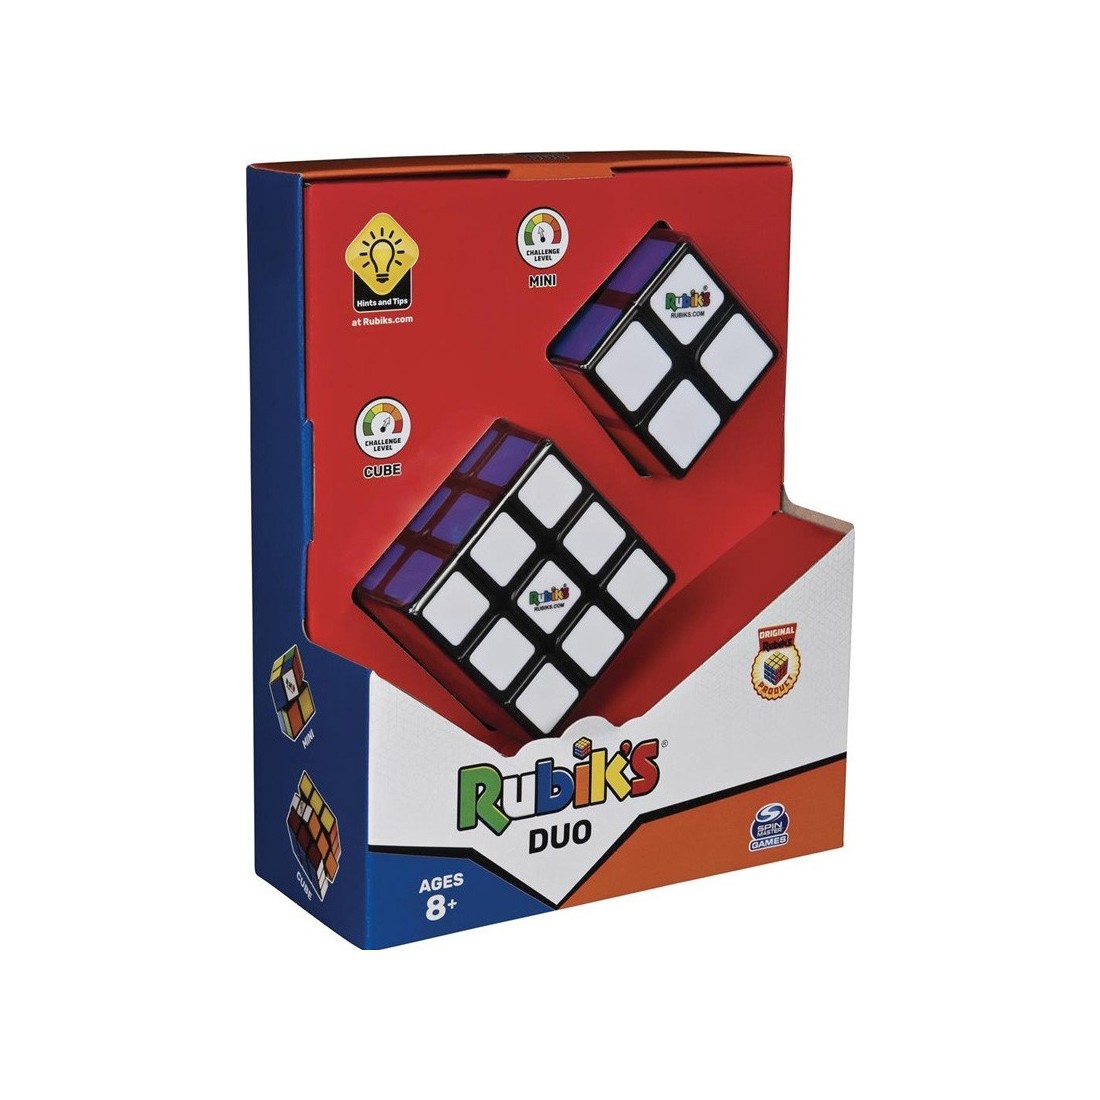 Acheter Perplexus Rubik's 2x2 - Spin Master - Jeux de société - Le